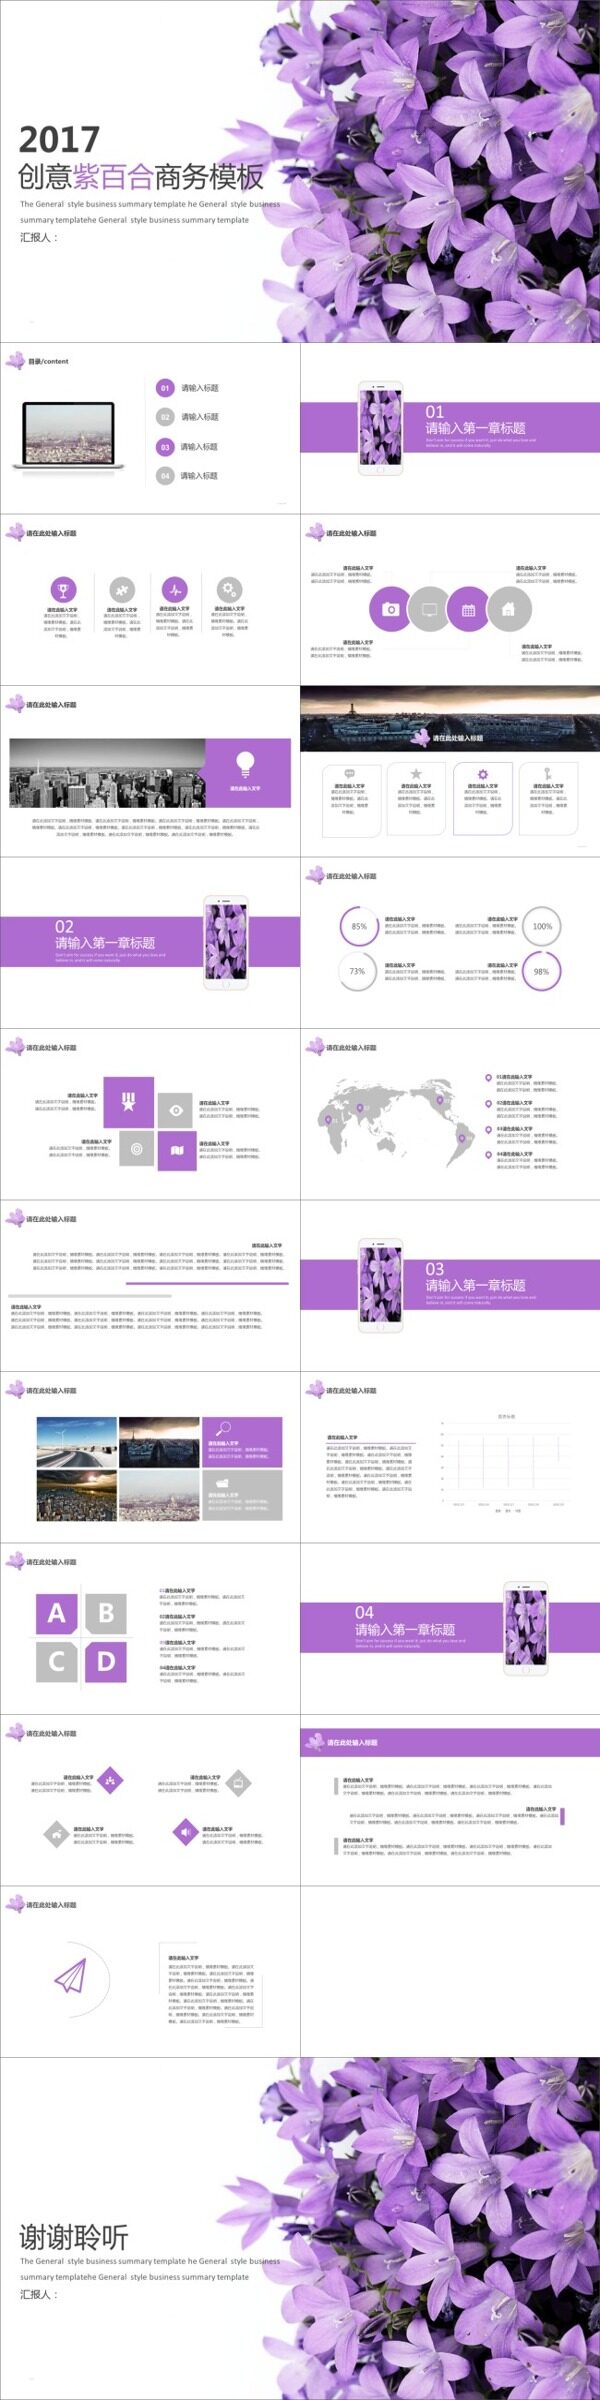 2017创意紫百合商务模板